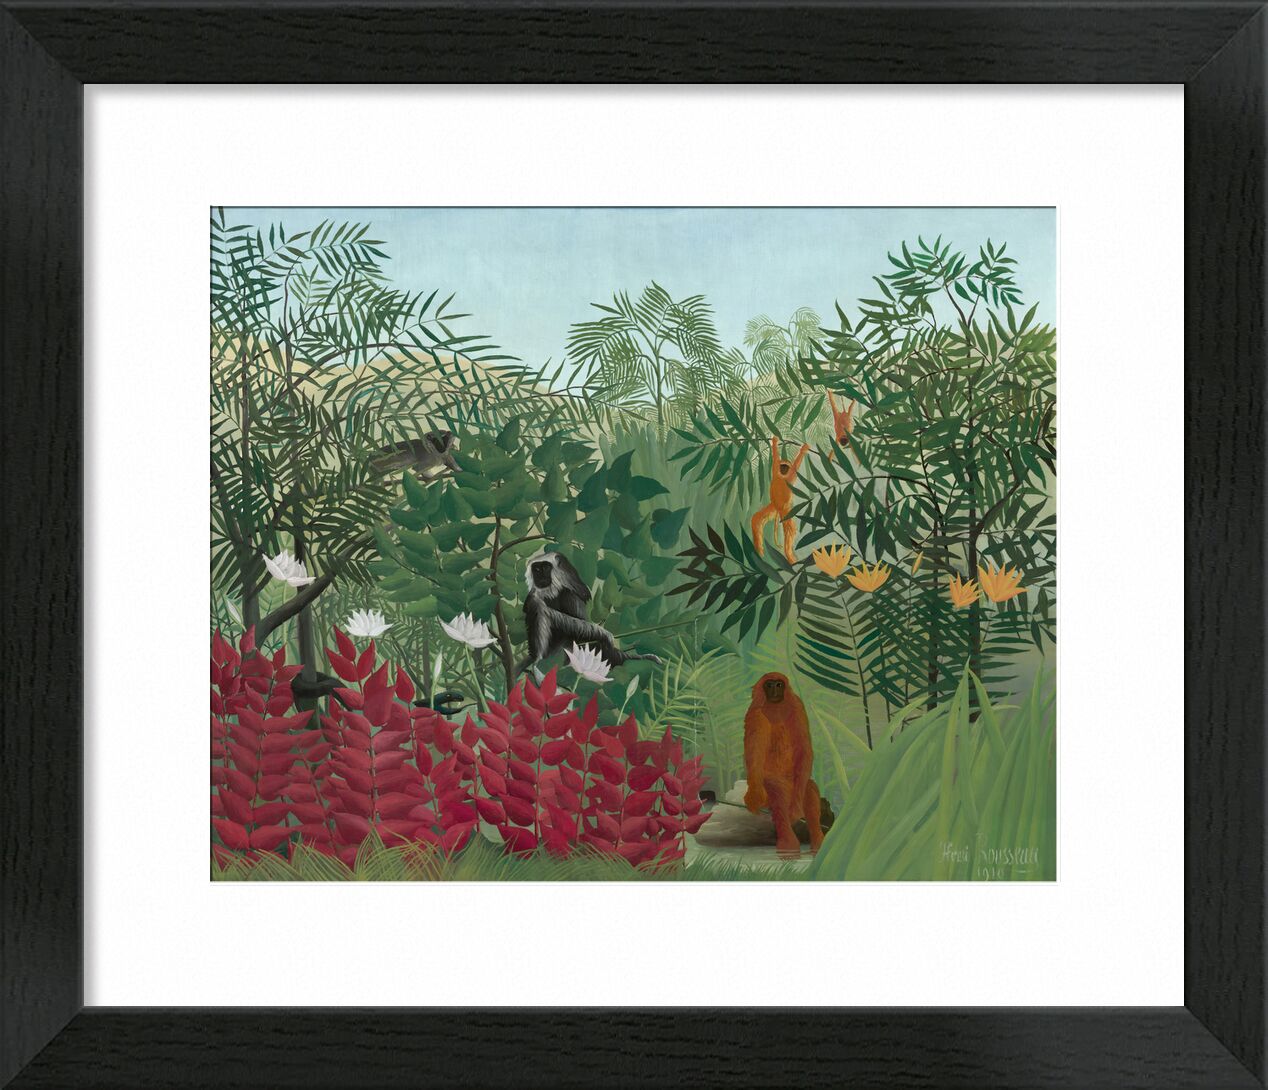 Tropical forest with monkeys desde Bellas artes, Prodi Art, naturaleza, Rousseau, bosque, selva, serpiente, árboles, monos